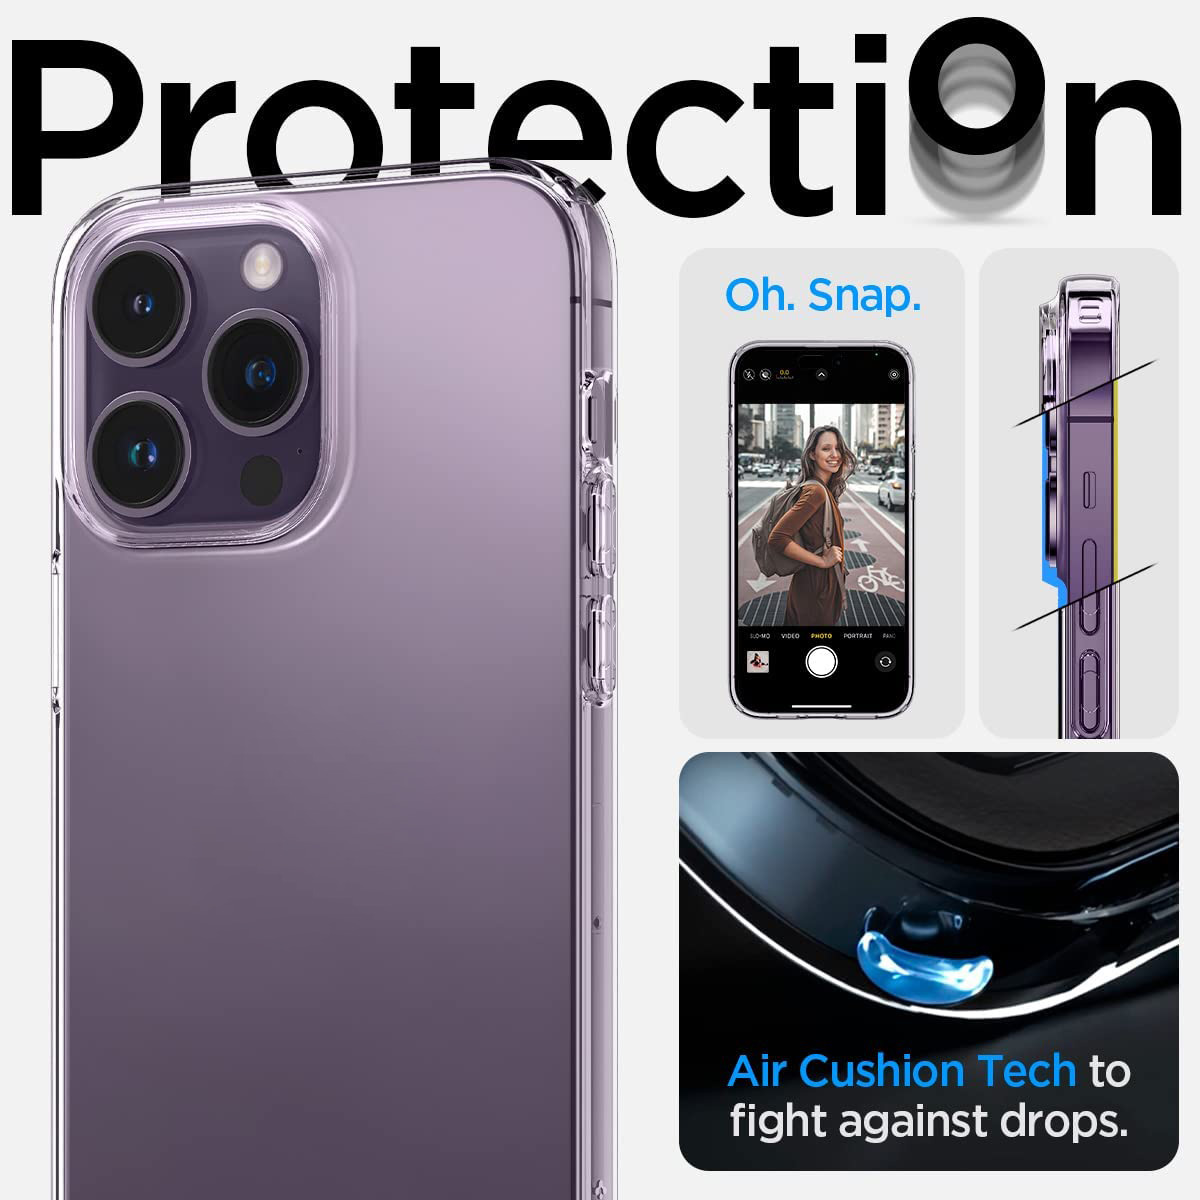 Ốp lưng chống sốc trong suốt cho iPhone 14 Pro Max (6.7 inch) hiệu Memumi Crystal Clear Case siêu mỏng 1.5mm độ trong tuyệt đối, chống trầy xước, chống ố vàng, tản nhiệt tốt - hàng nhập khẩu